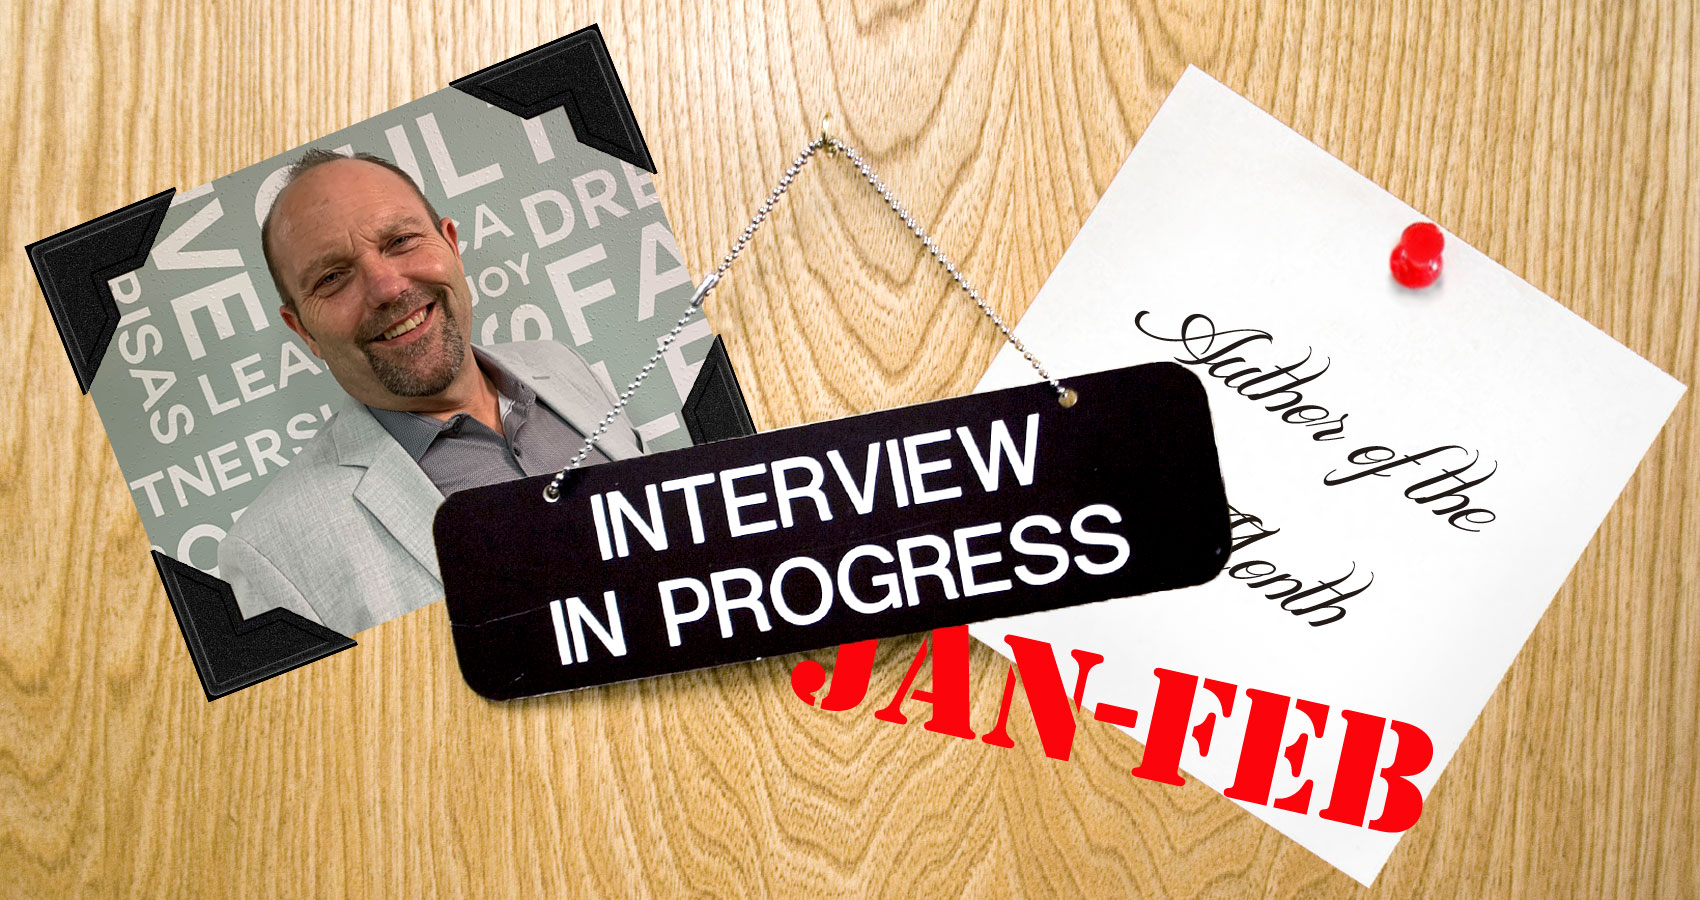 Interview Q&A with Jeff Flesch, a writer at Spillwords.com